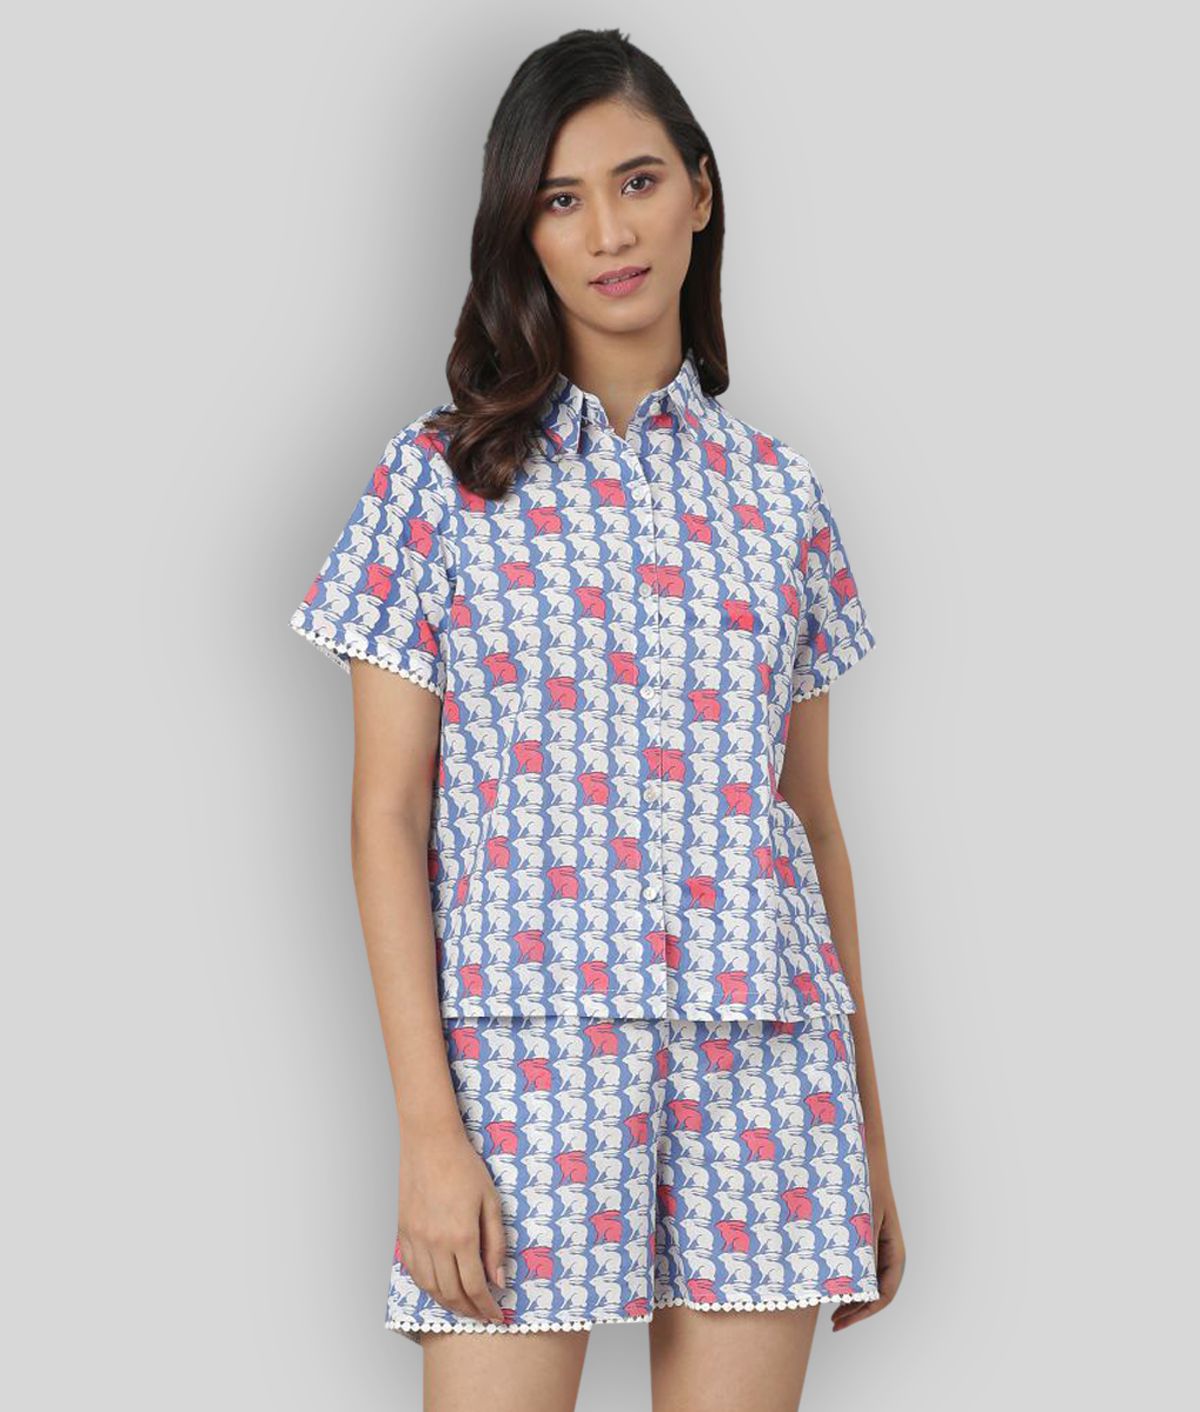 Janasya - Multicolor Cotton Women's Nightwear Nightsuit Sets ( Pack of 1 )